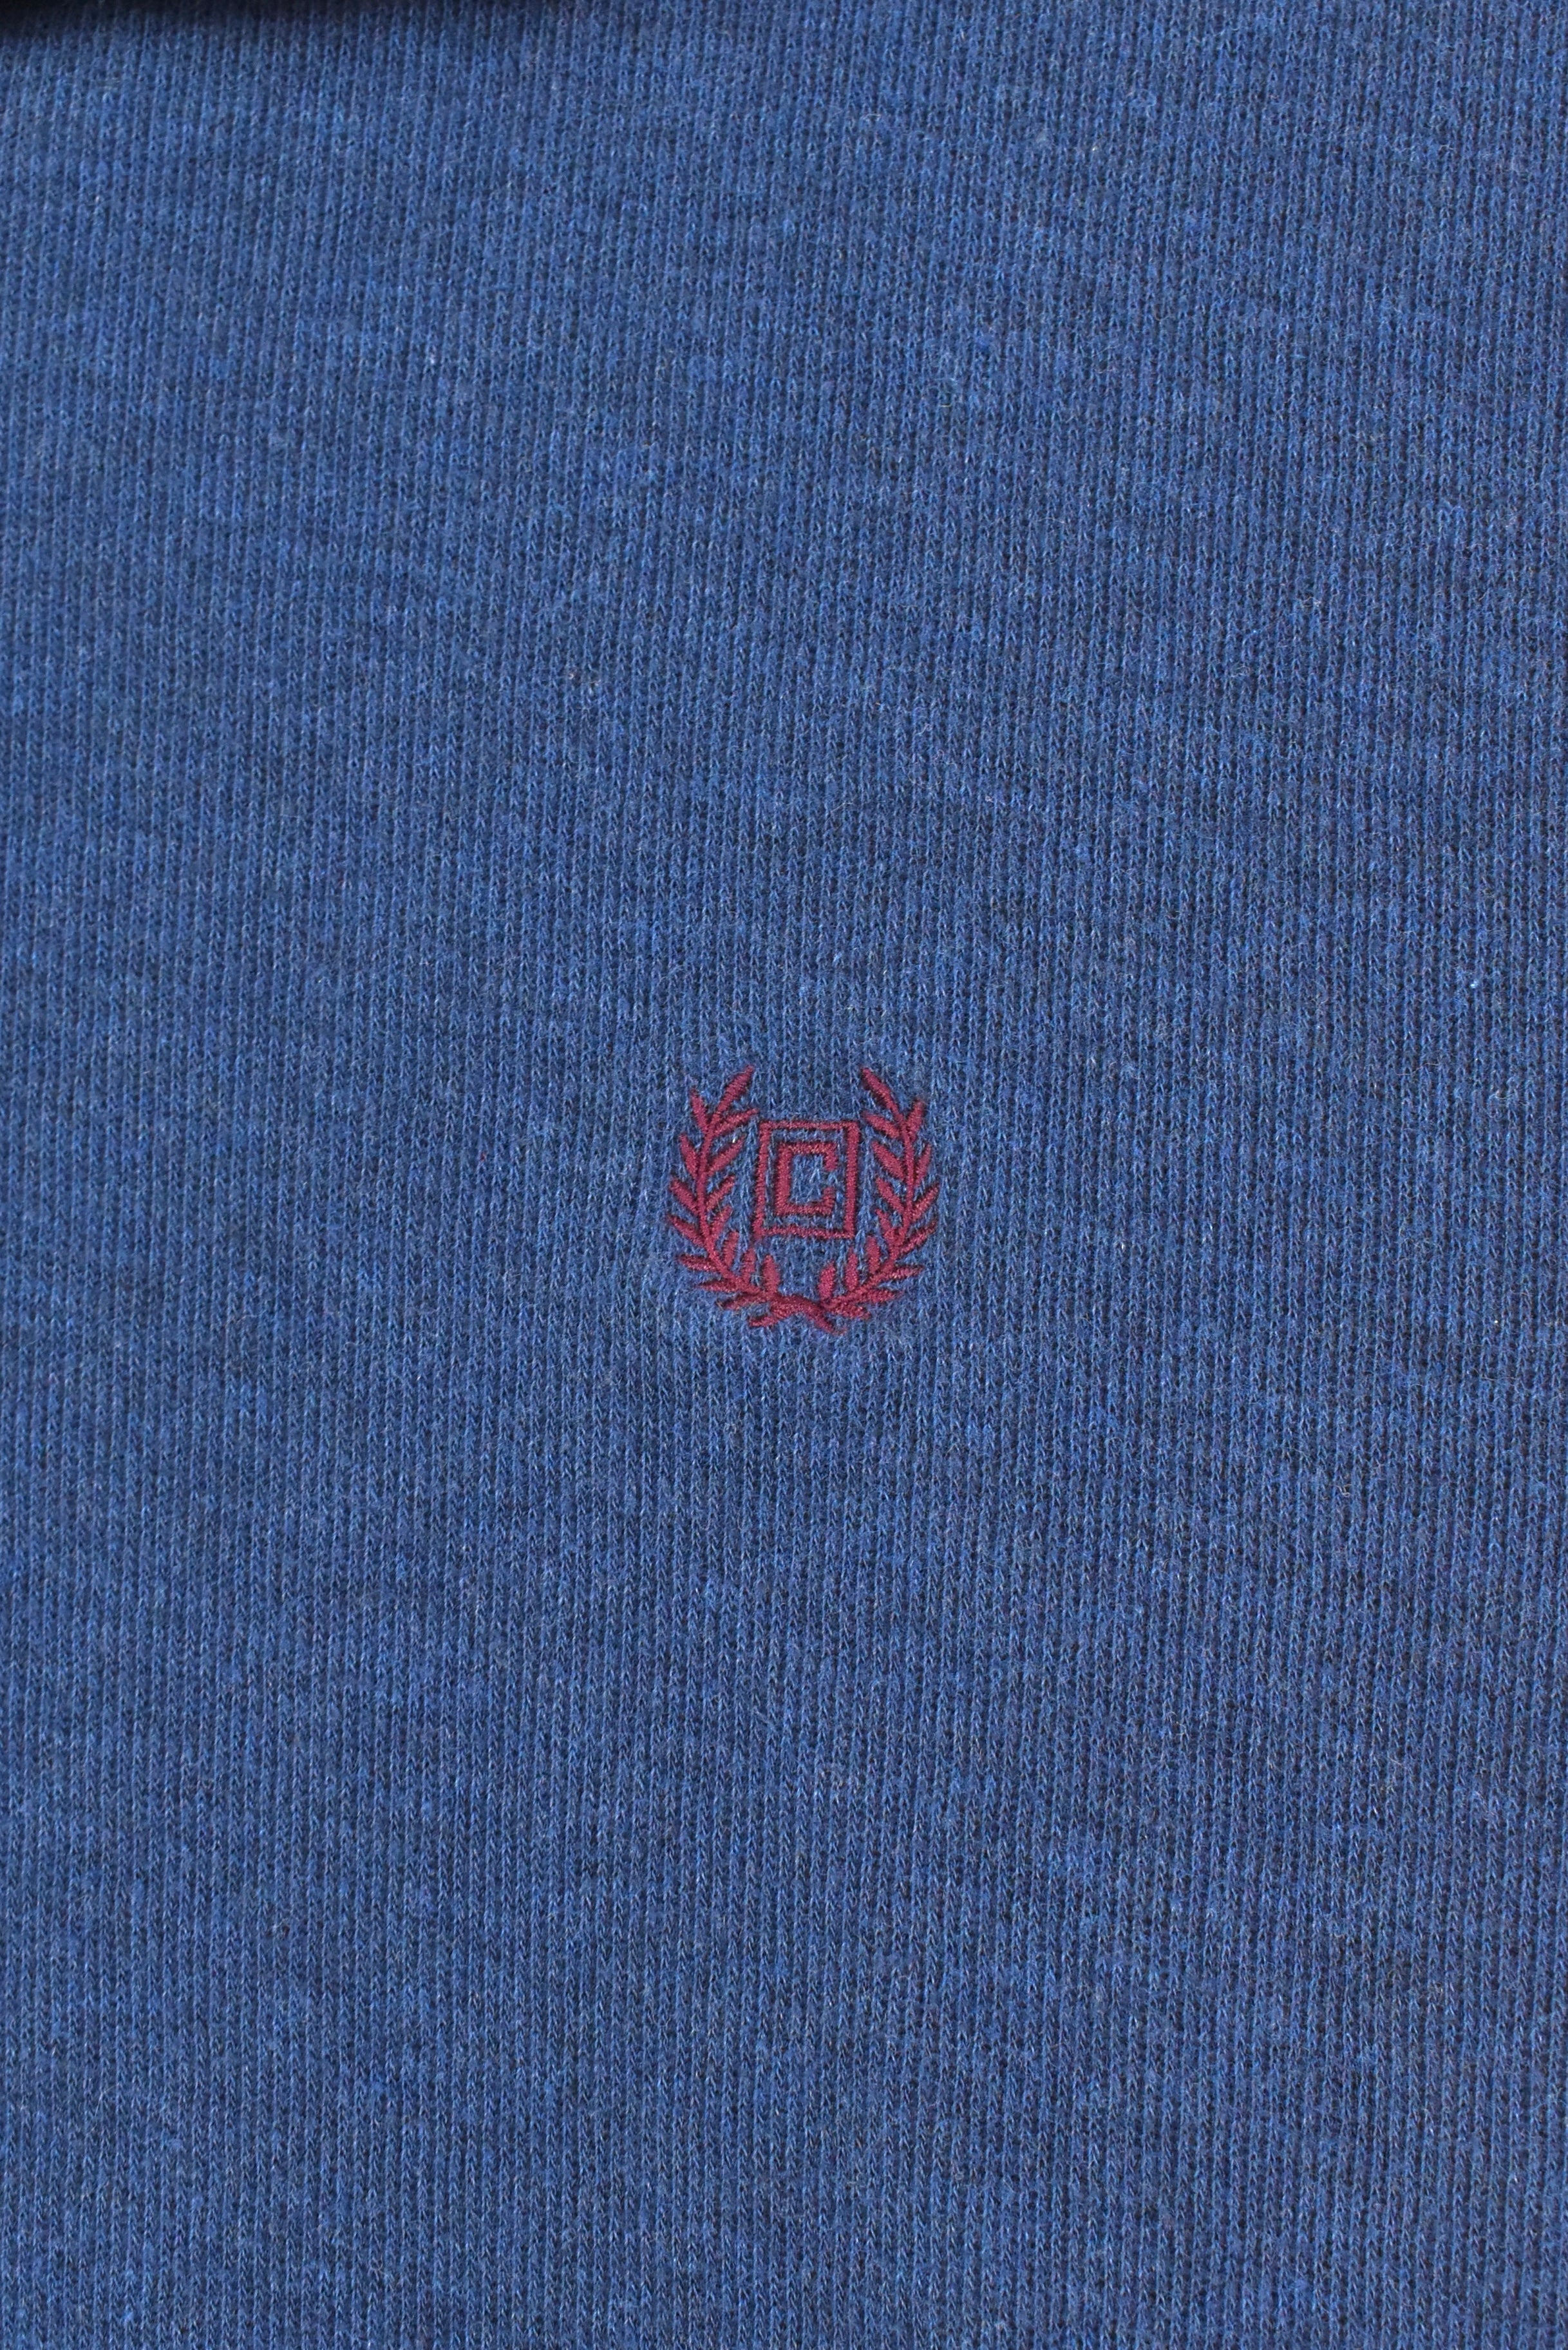 Vintage Ralph Lauren sweatshirt, Chaps embroidered 1/4 zip jumper - large, navy blue RALPH LAUREN